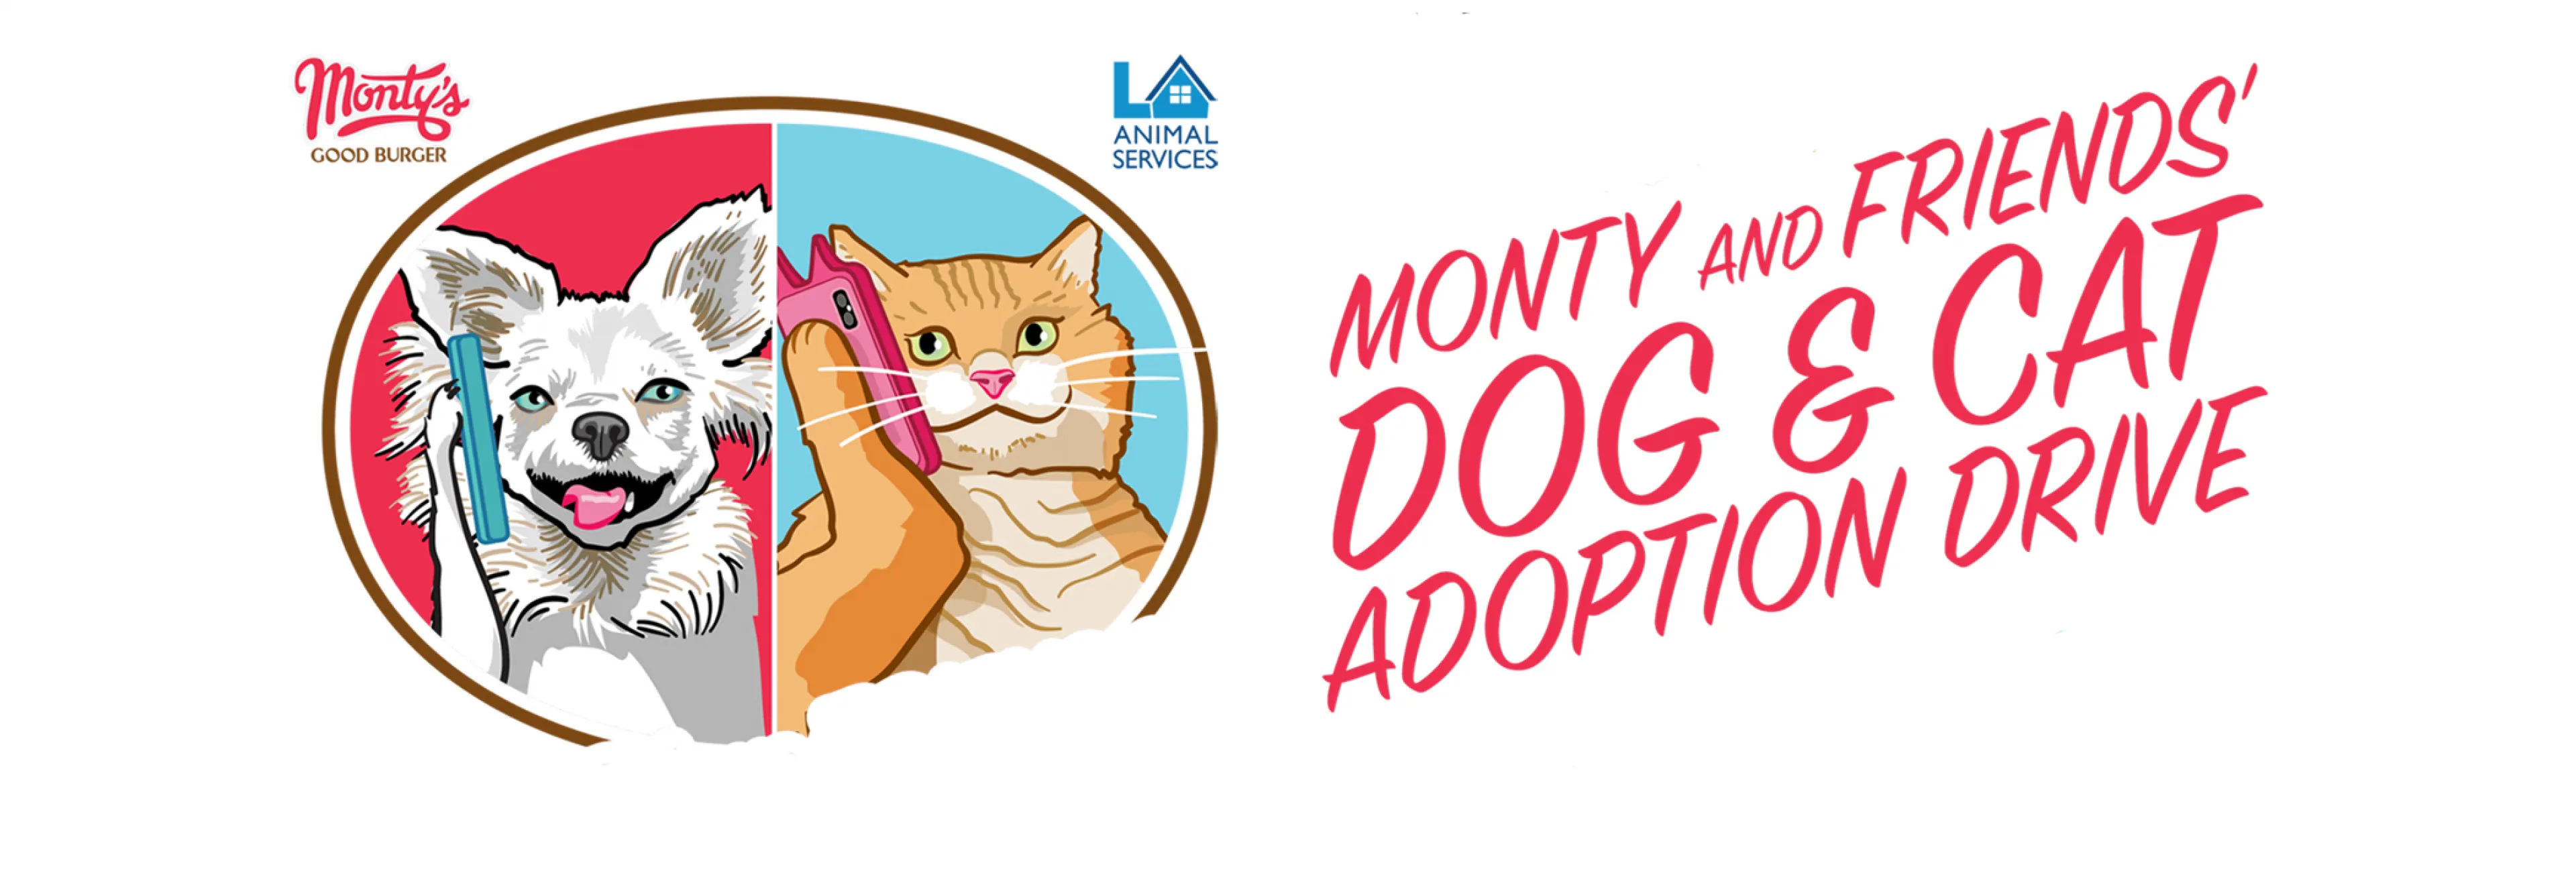 Monty and Friends Pet Adoption Drive | LA Animal Services